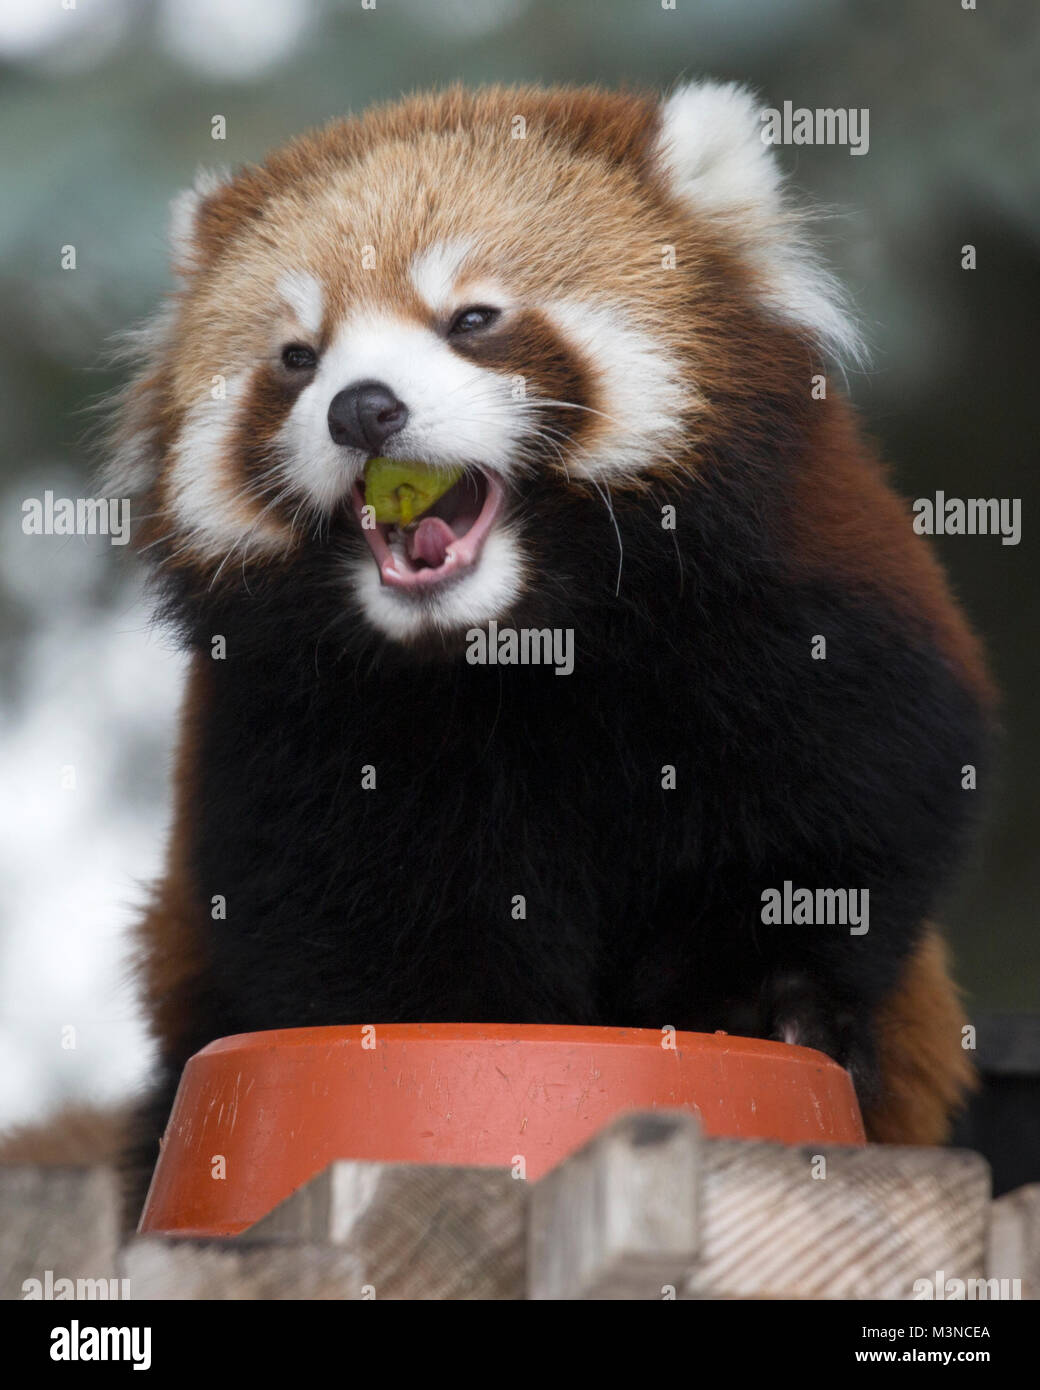 Le panda rouge (Ailurus fulgens) de l'alimentation Banque D'Images